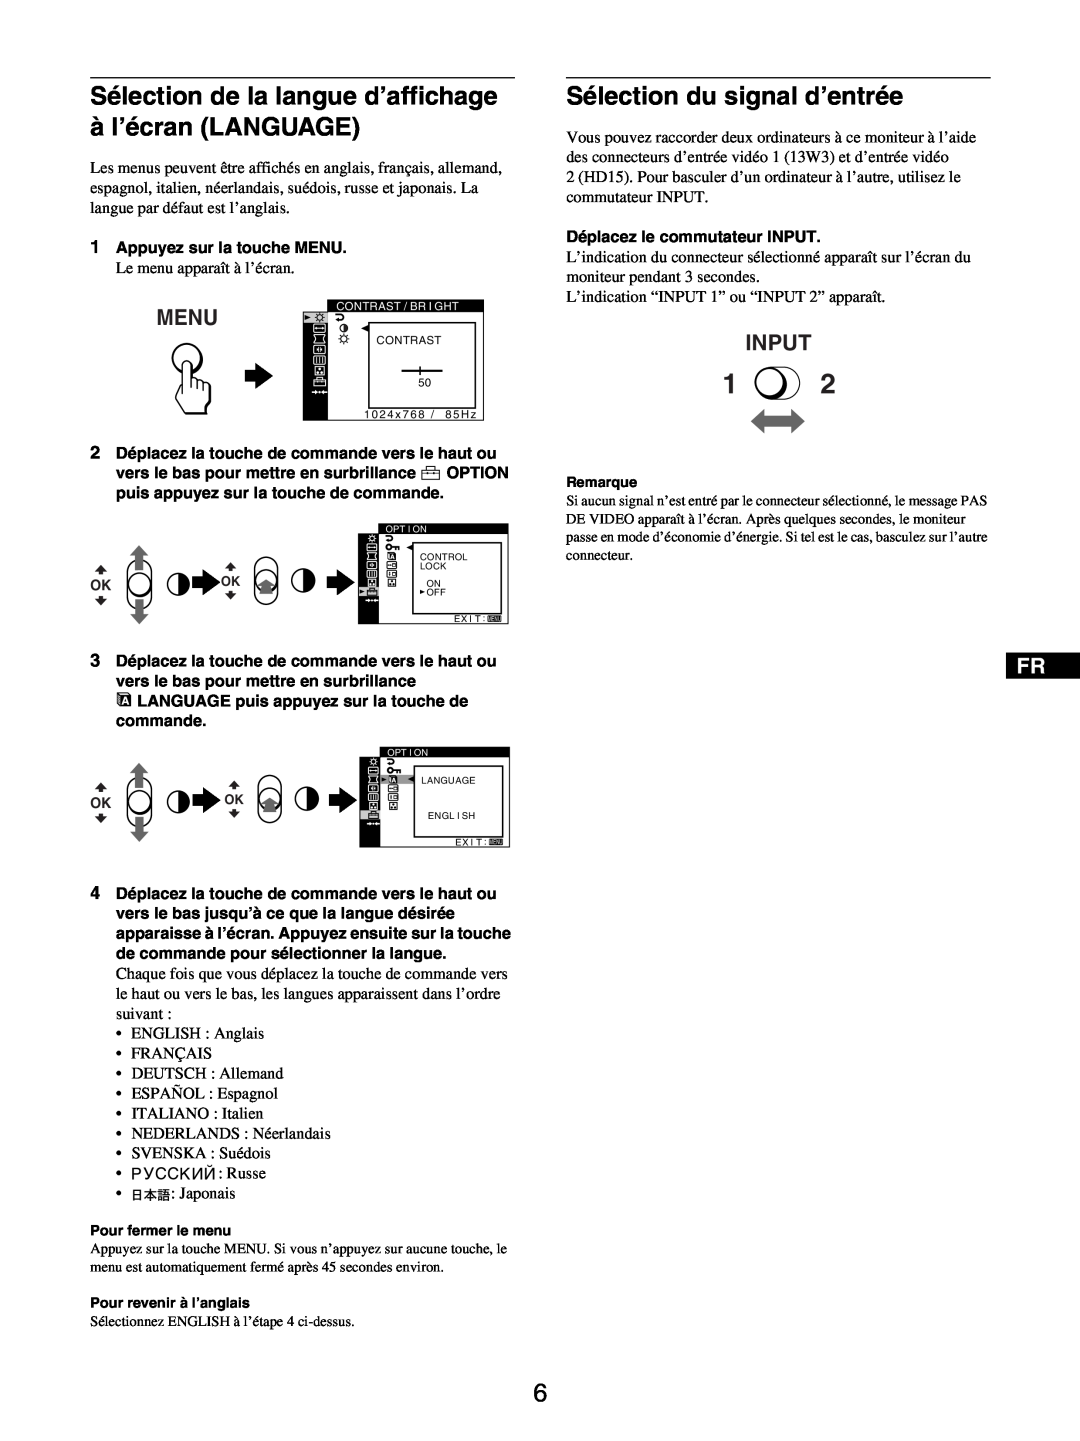 Sony GDM-5510 Sélection de la langue d’affichage à l’écran LANGUAGE, Sélection du signal d’entrée, Menu, Input 